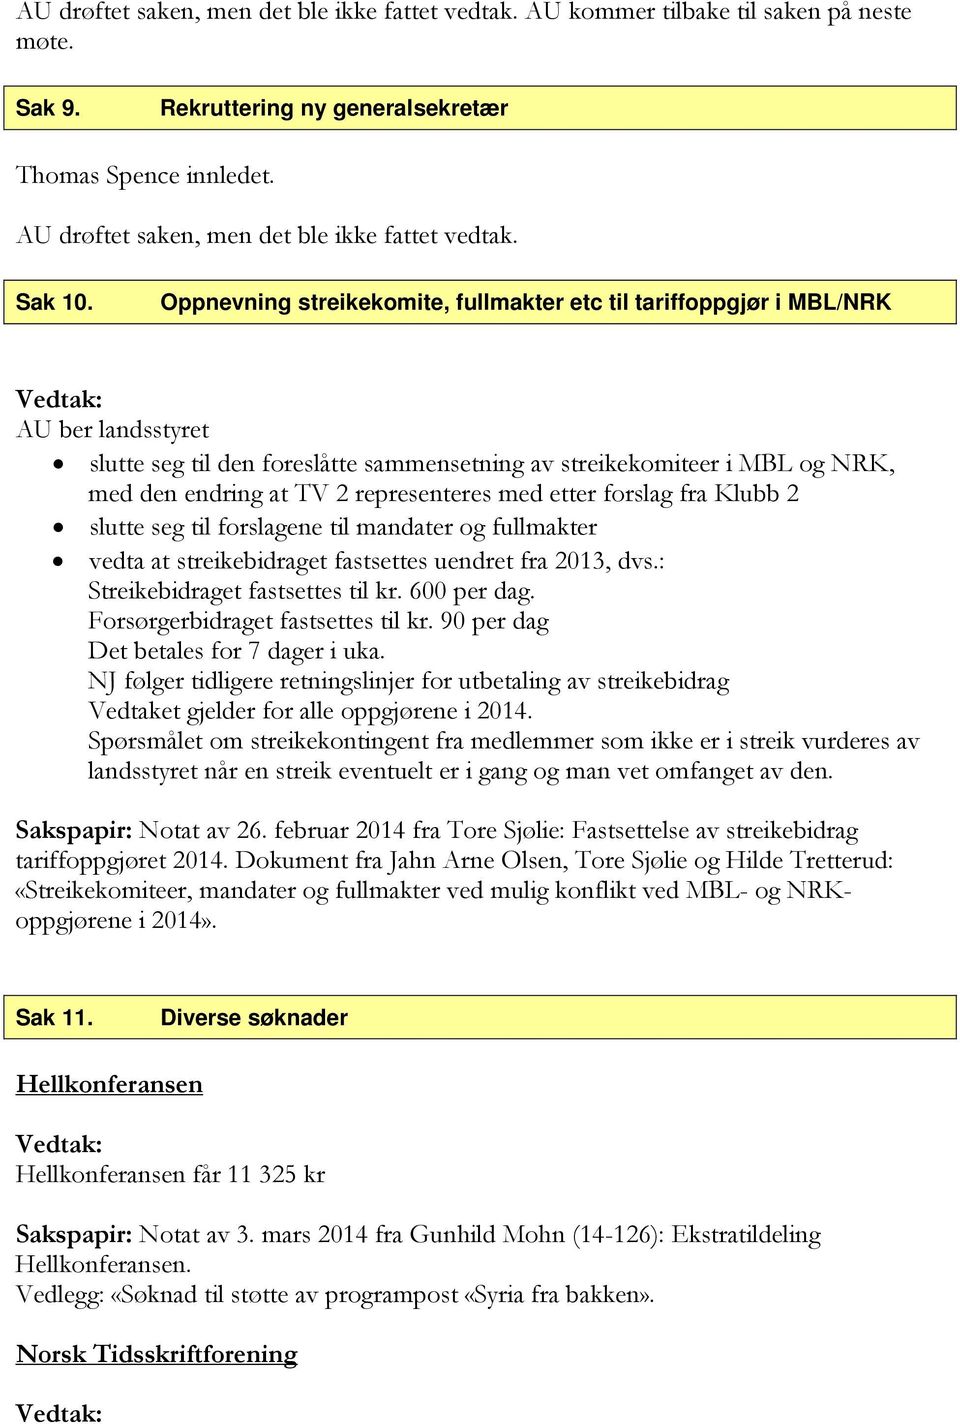 Oppnevning streikekomite, fullmakter etc til tariffoppgjør i MBL/NRK AU ber landsstyret slutte seg til den foreslåtte sammensetning av streikekomiteer i MBL og NRK, med den endring at TV 2